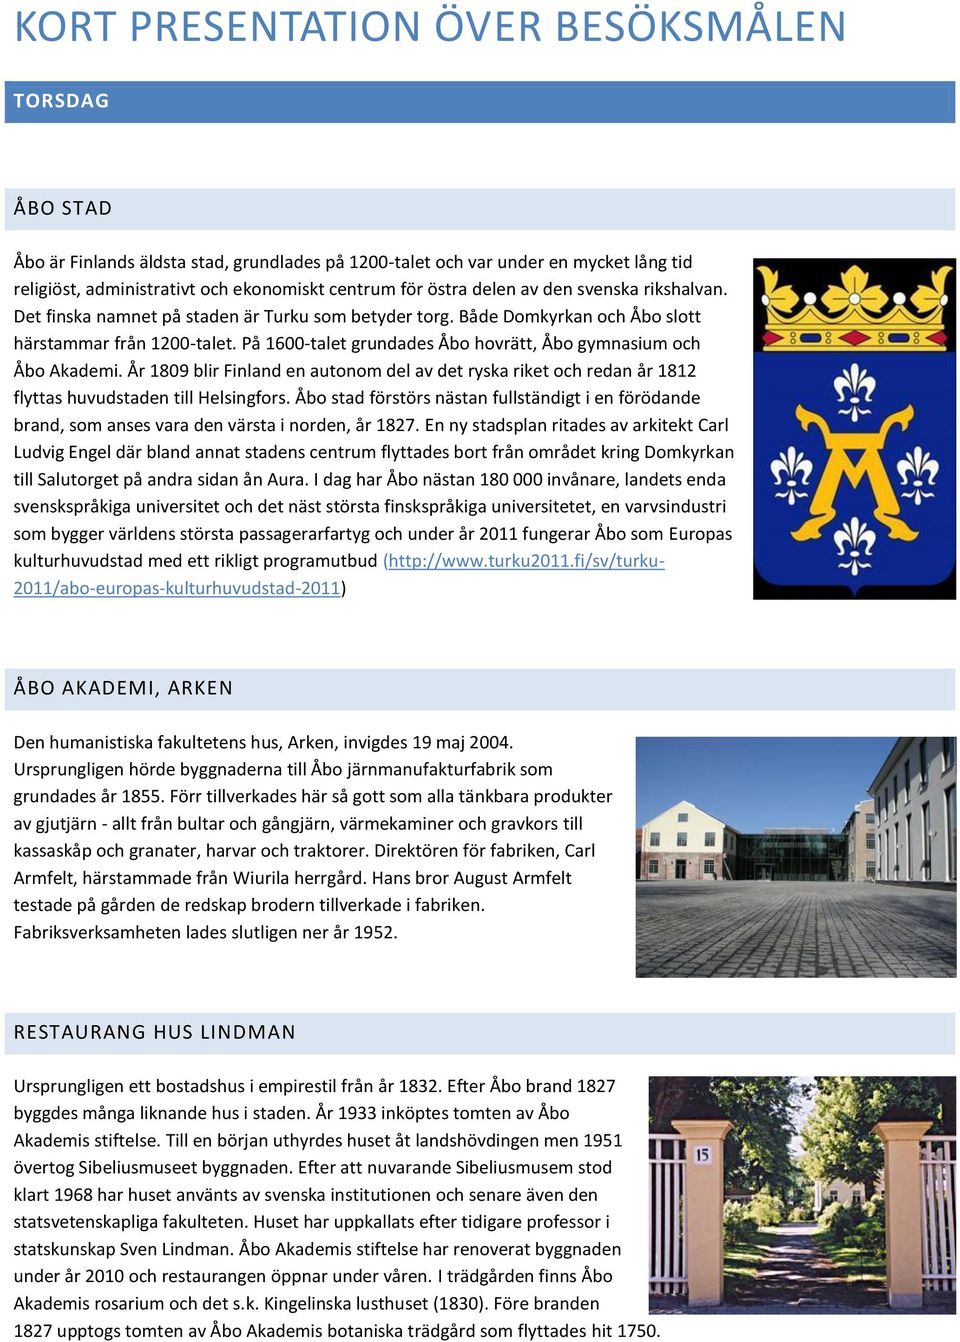 På 1600-talet grundades Åbo hovrätt, Åbo gymnasium och Åbo Akademi. År 1809 blir Finland en autonom del av det ryska riket och redan år 1812 flyttas huvudstaden till Helsingfors.